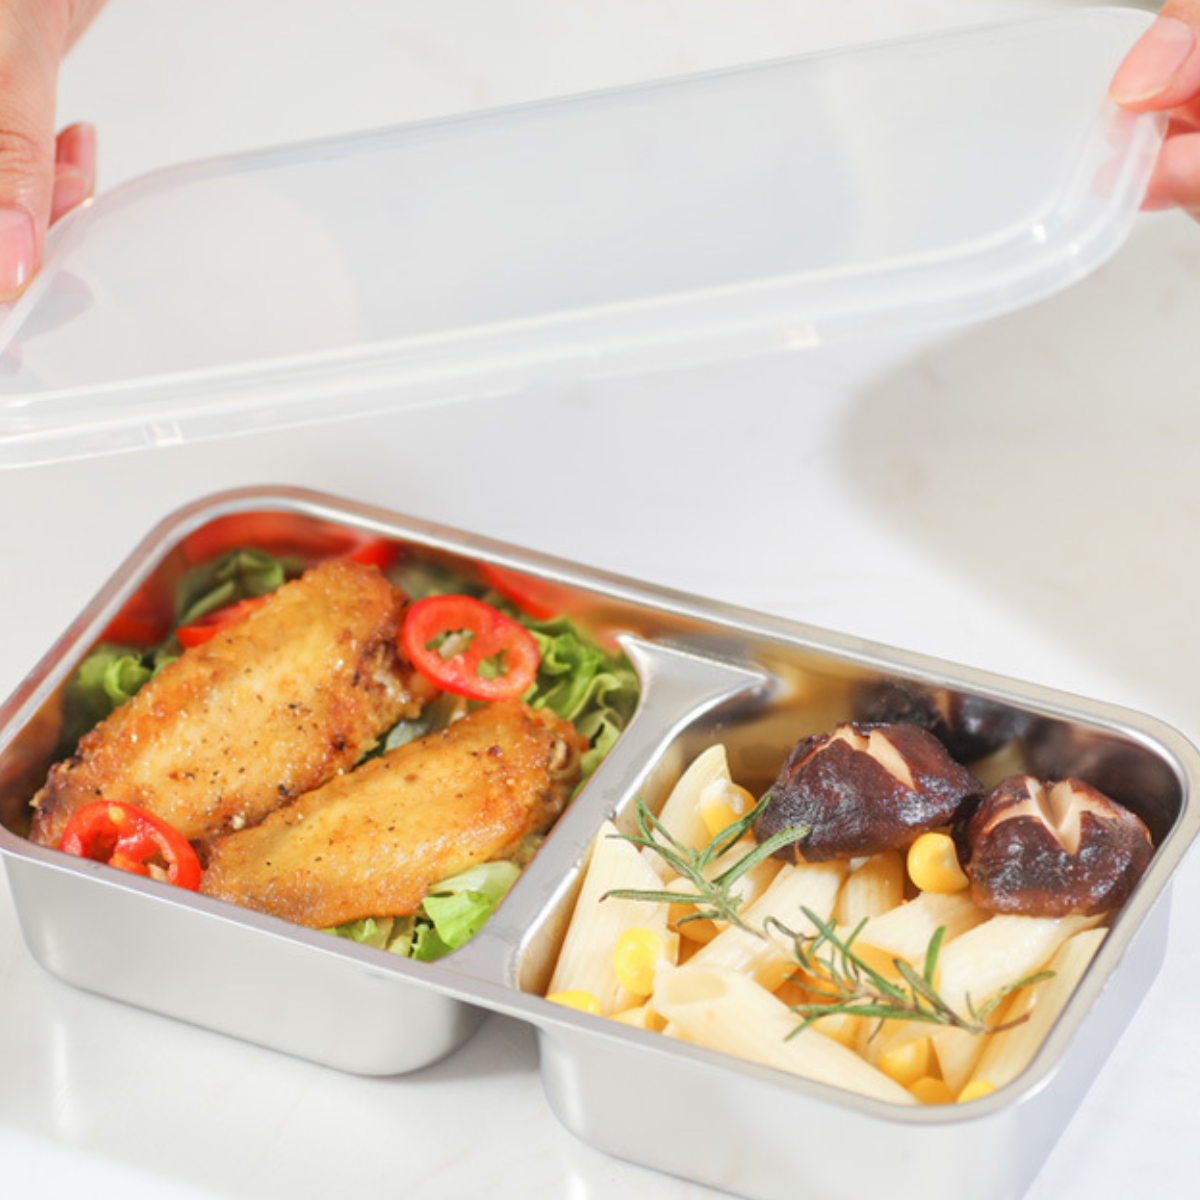 zu reinigen isolierte Erwärmung, tragbar&langlebig, Lunchbox: UWOT 300W schnelle Lunch-Box leicht dreischichtige